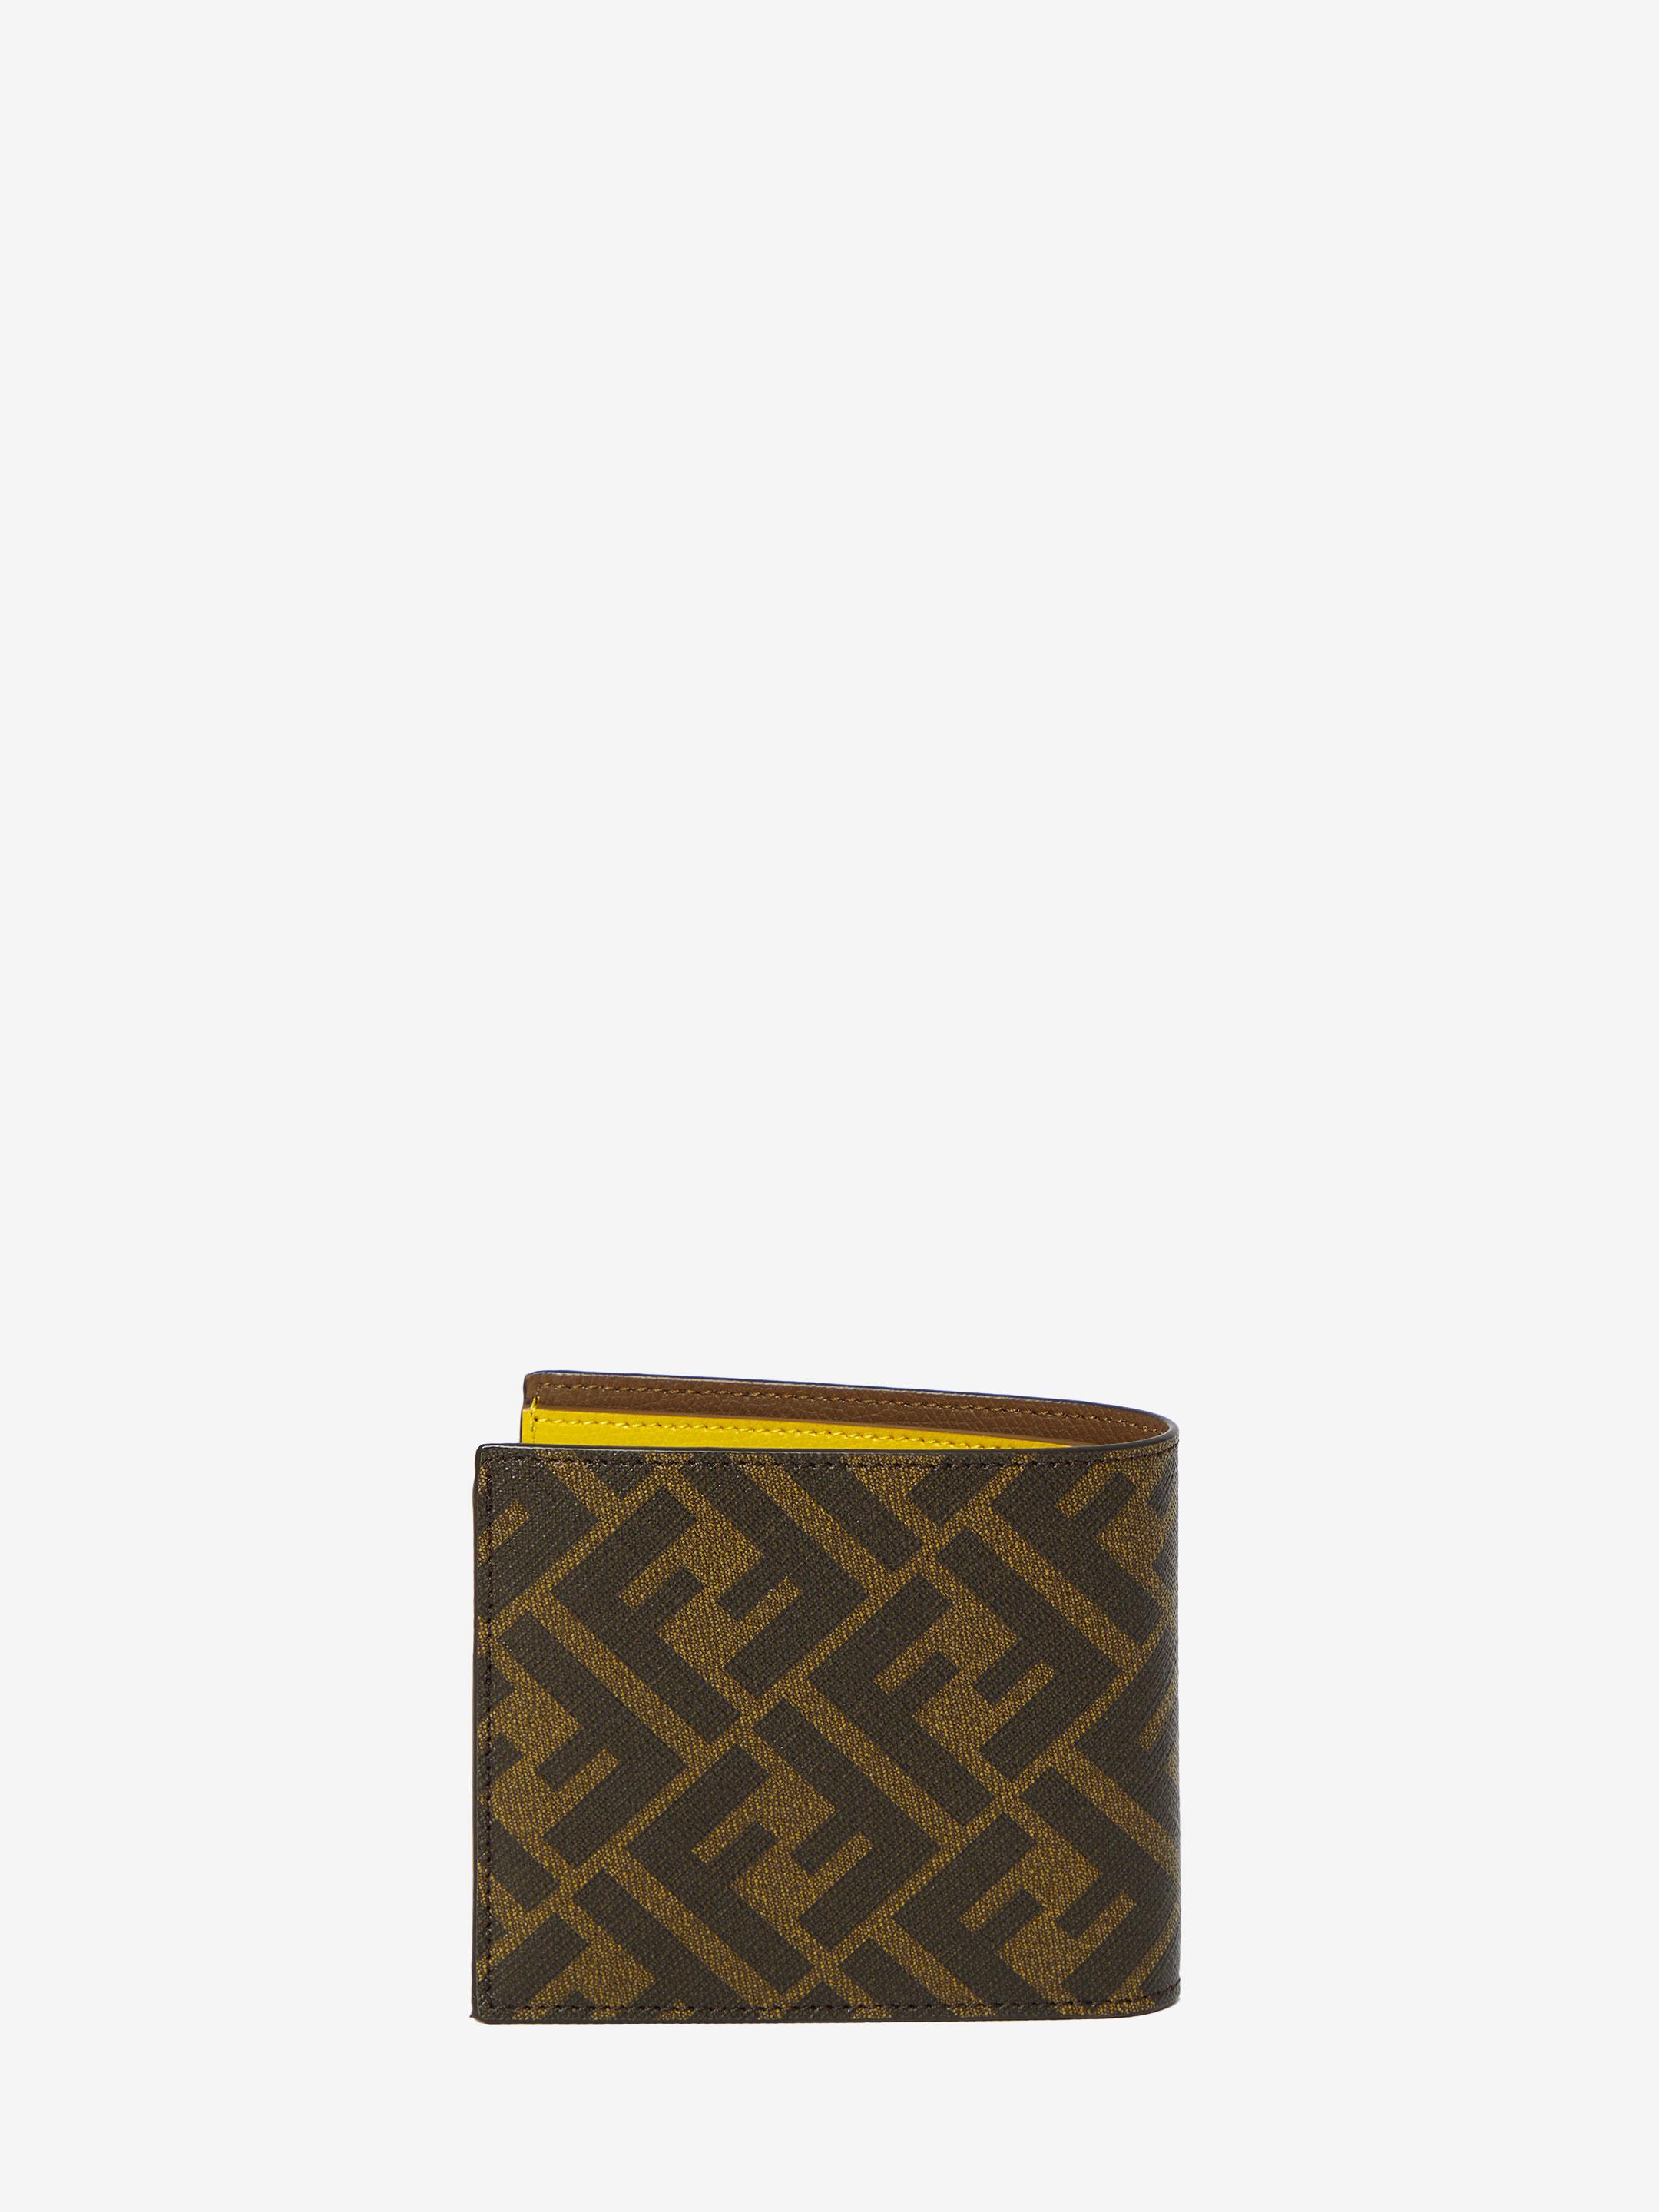 FF-logo print wallet, FENDI